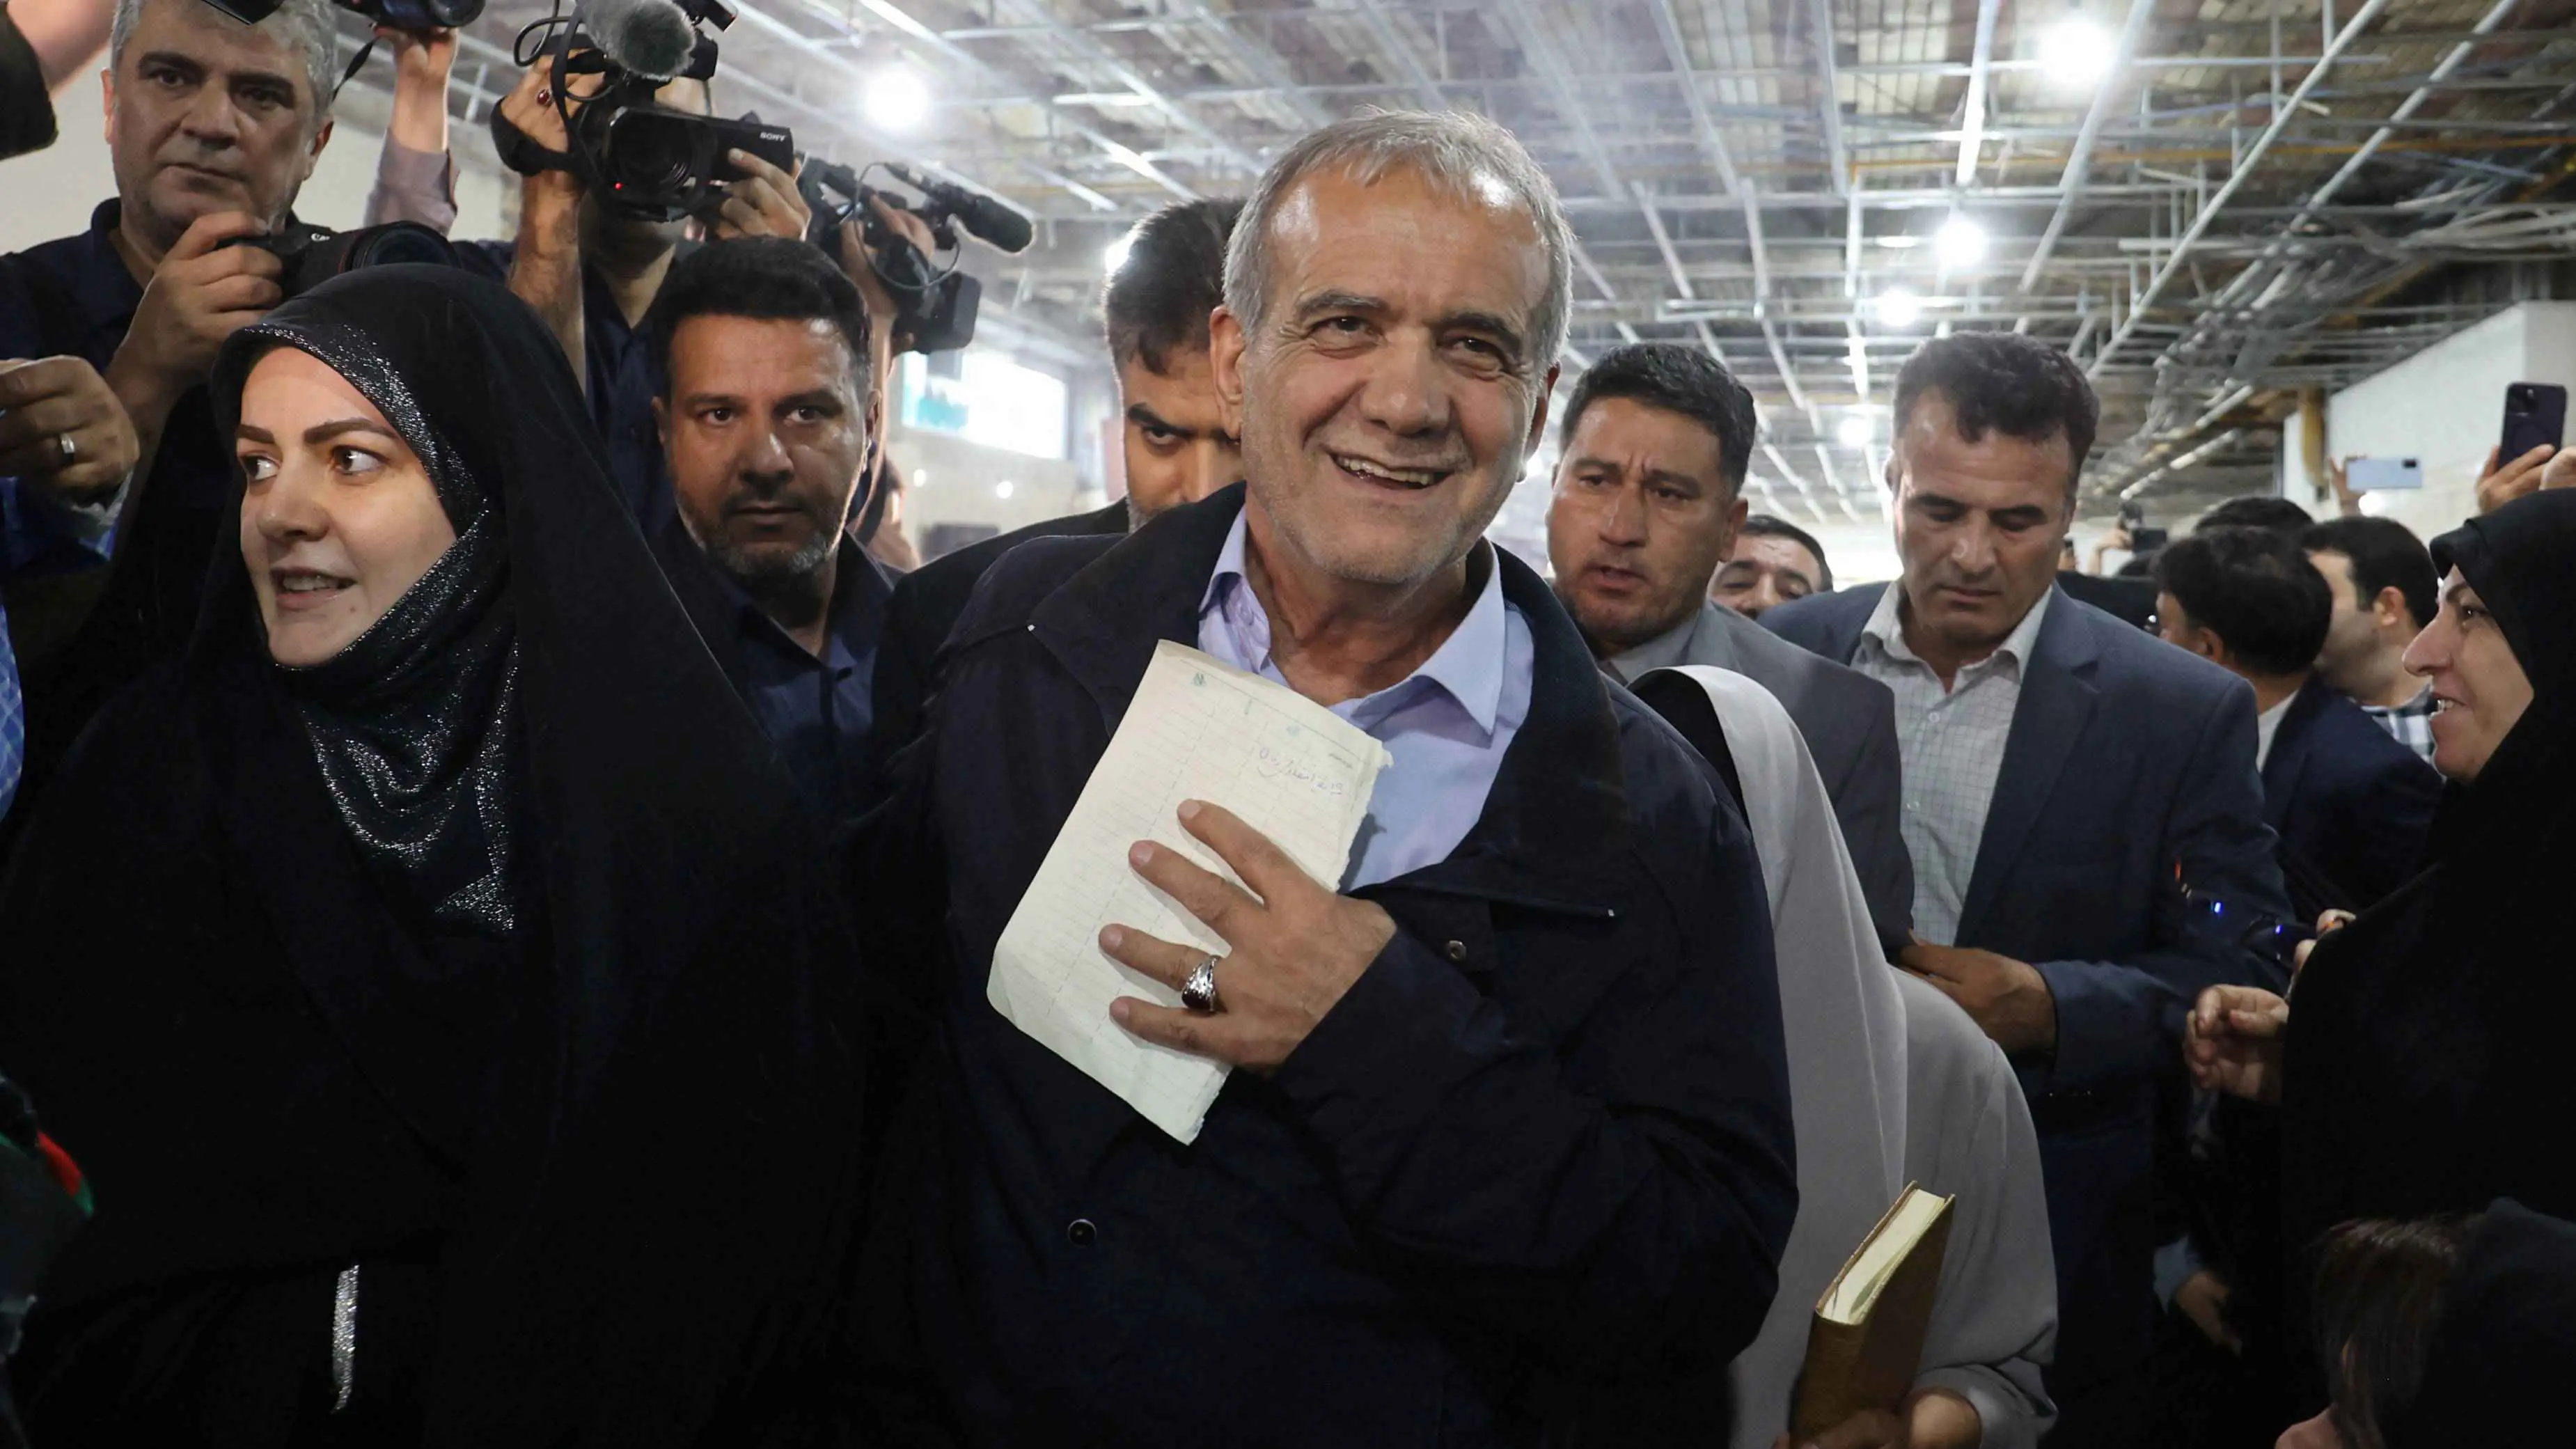 زعيم "سنّة إيران" يعلن دعمه لبزشكيان في انتخابات الرئاسة